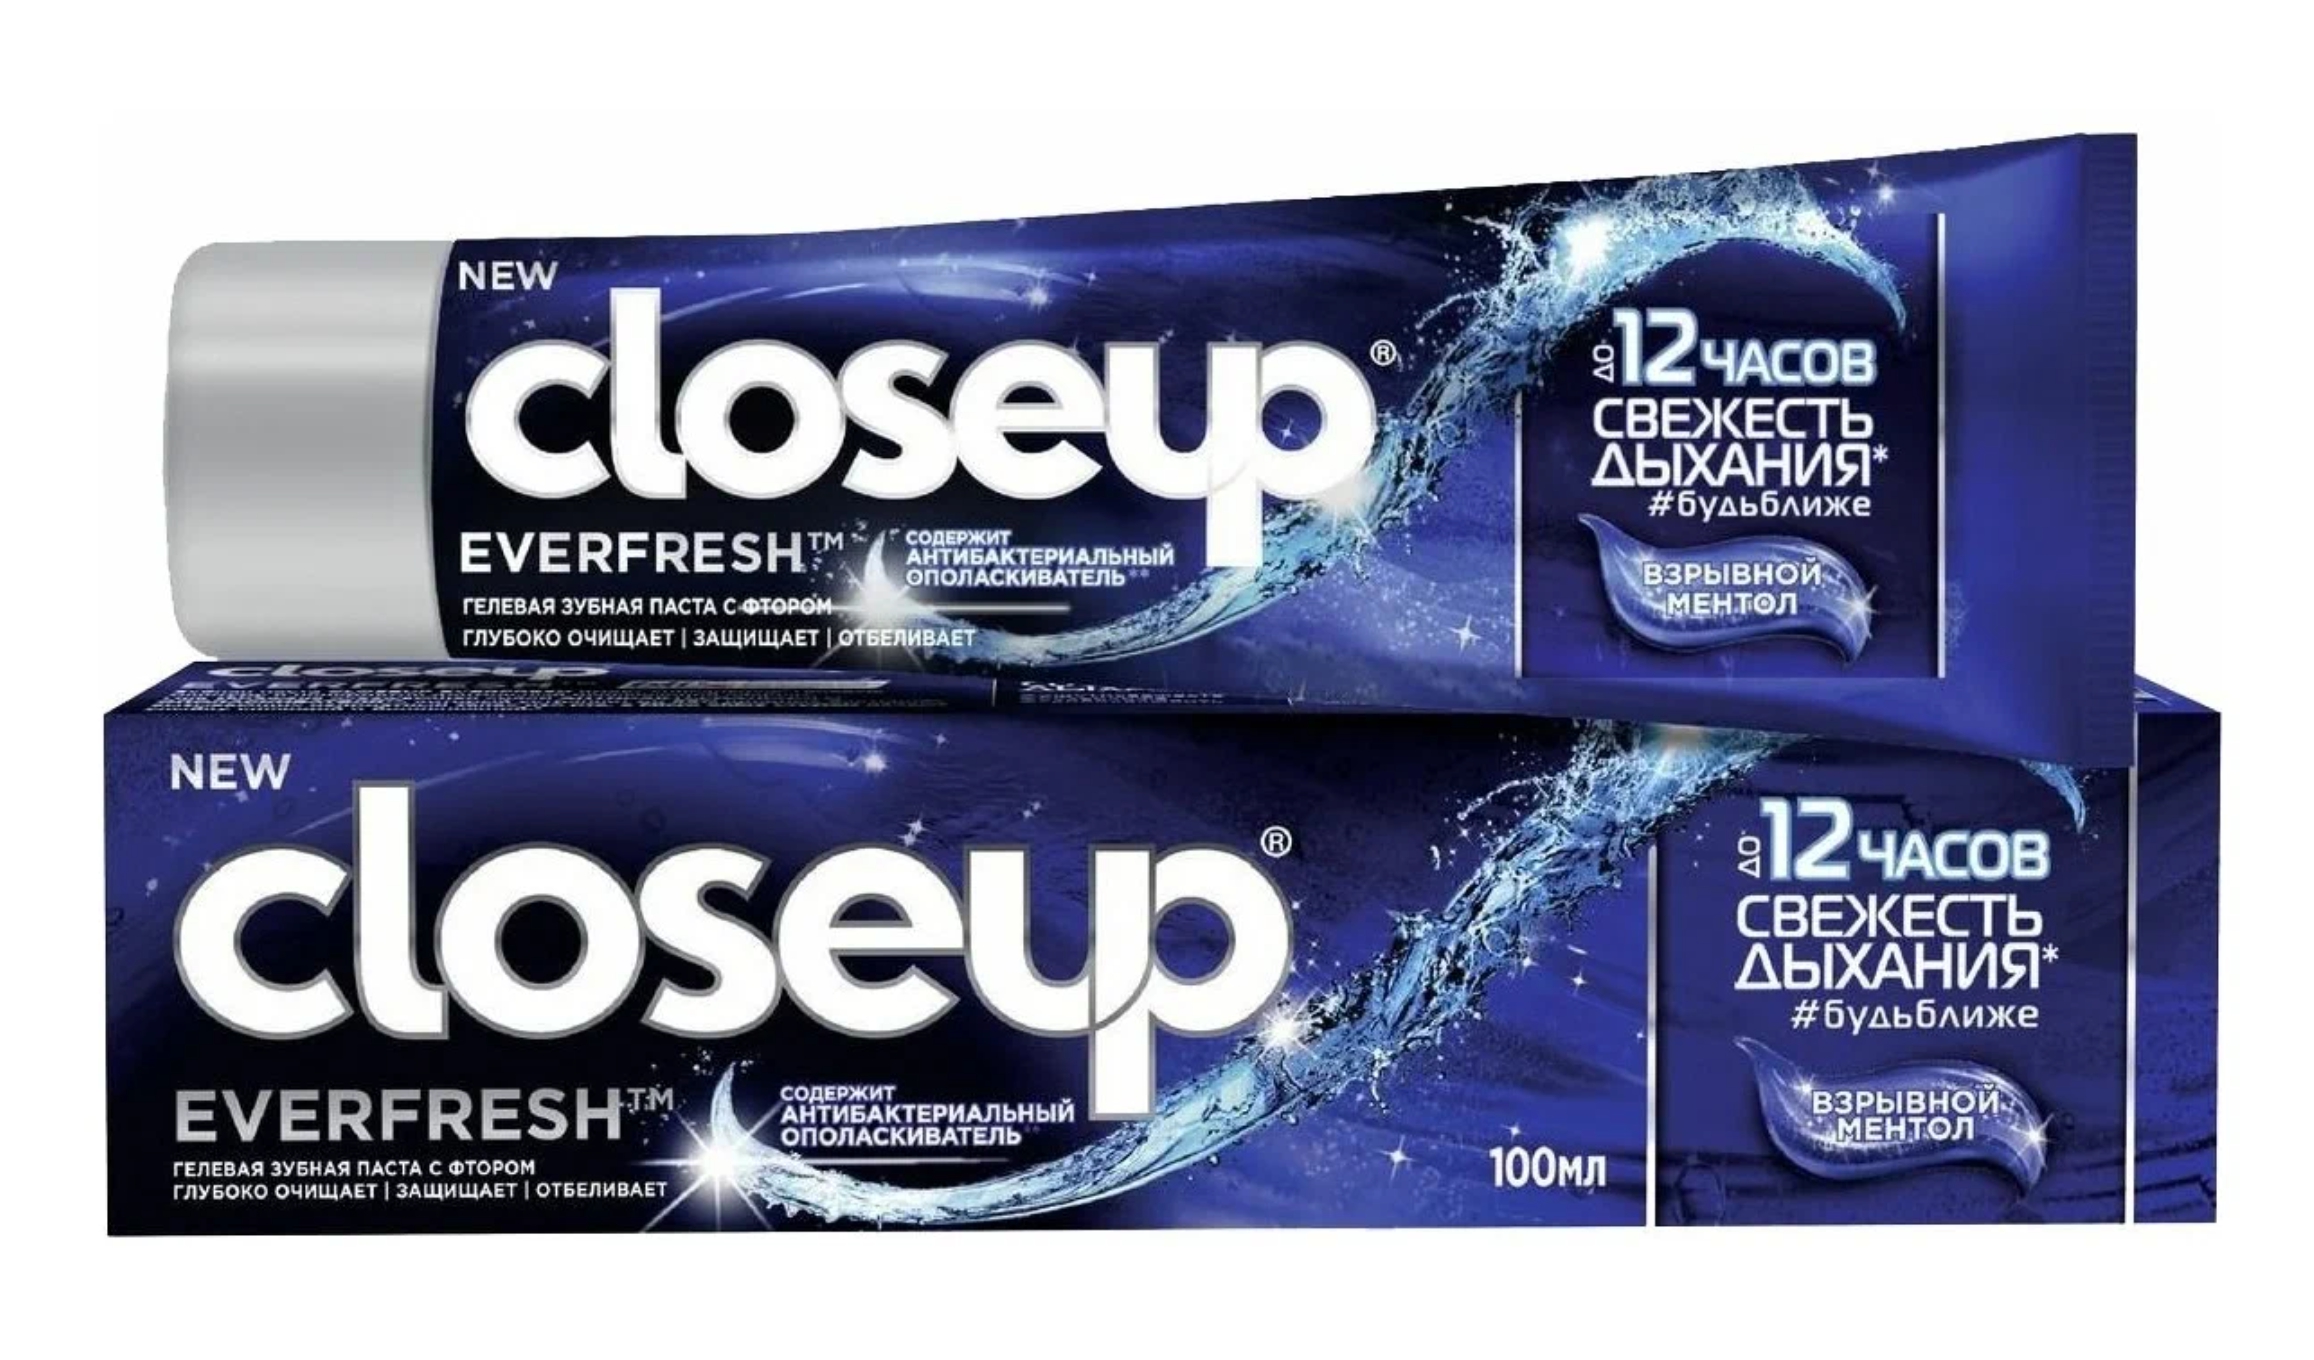 Зубная паста CloseUp Everfresh взрывной ментол, 100 мл